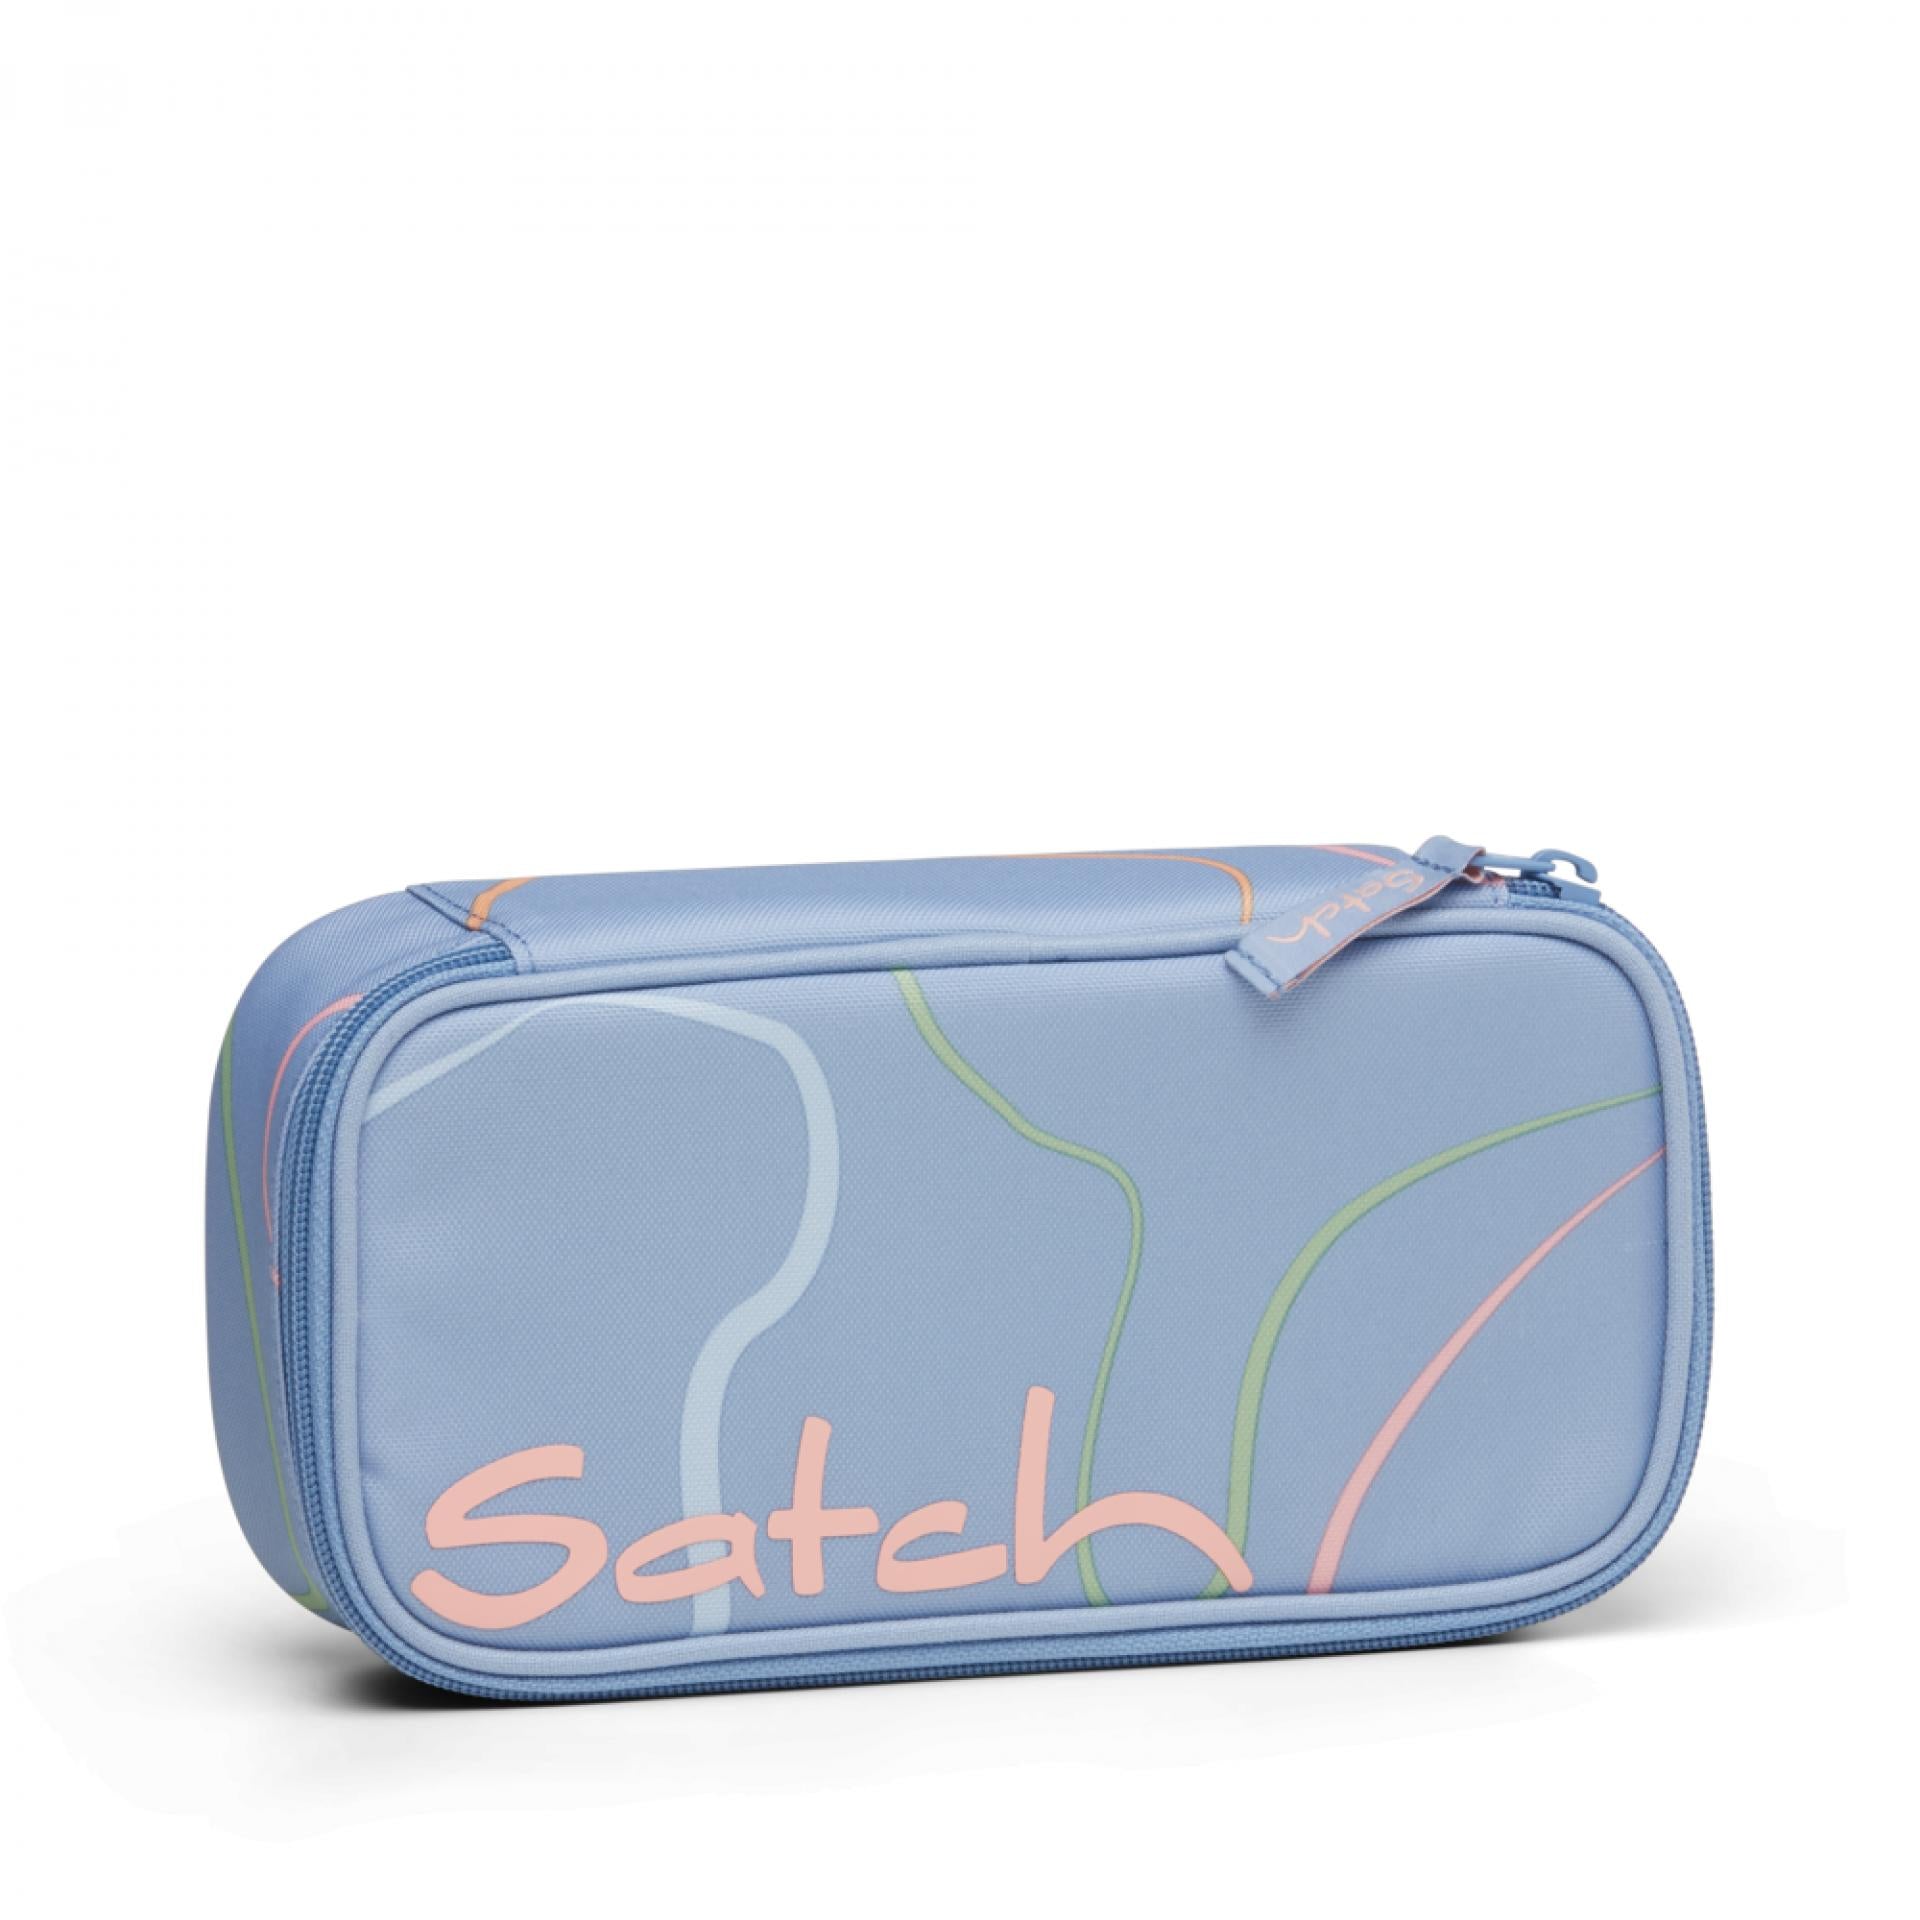 Satch Schlamperbox Stifteetui - Farbe: Vivid Blue